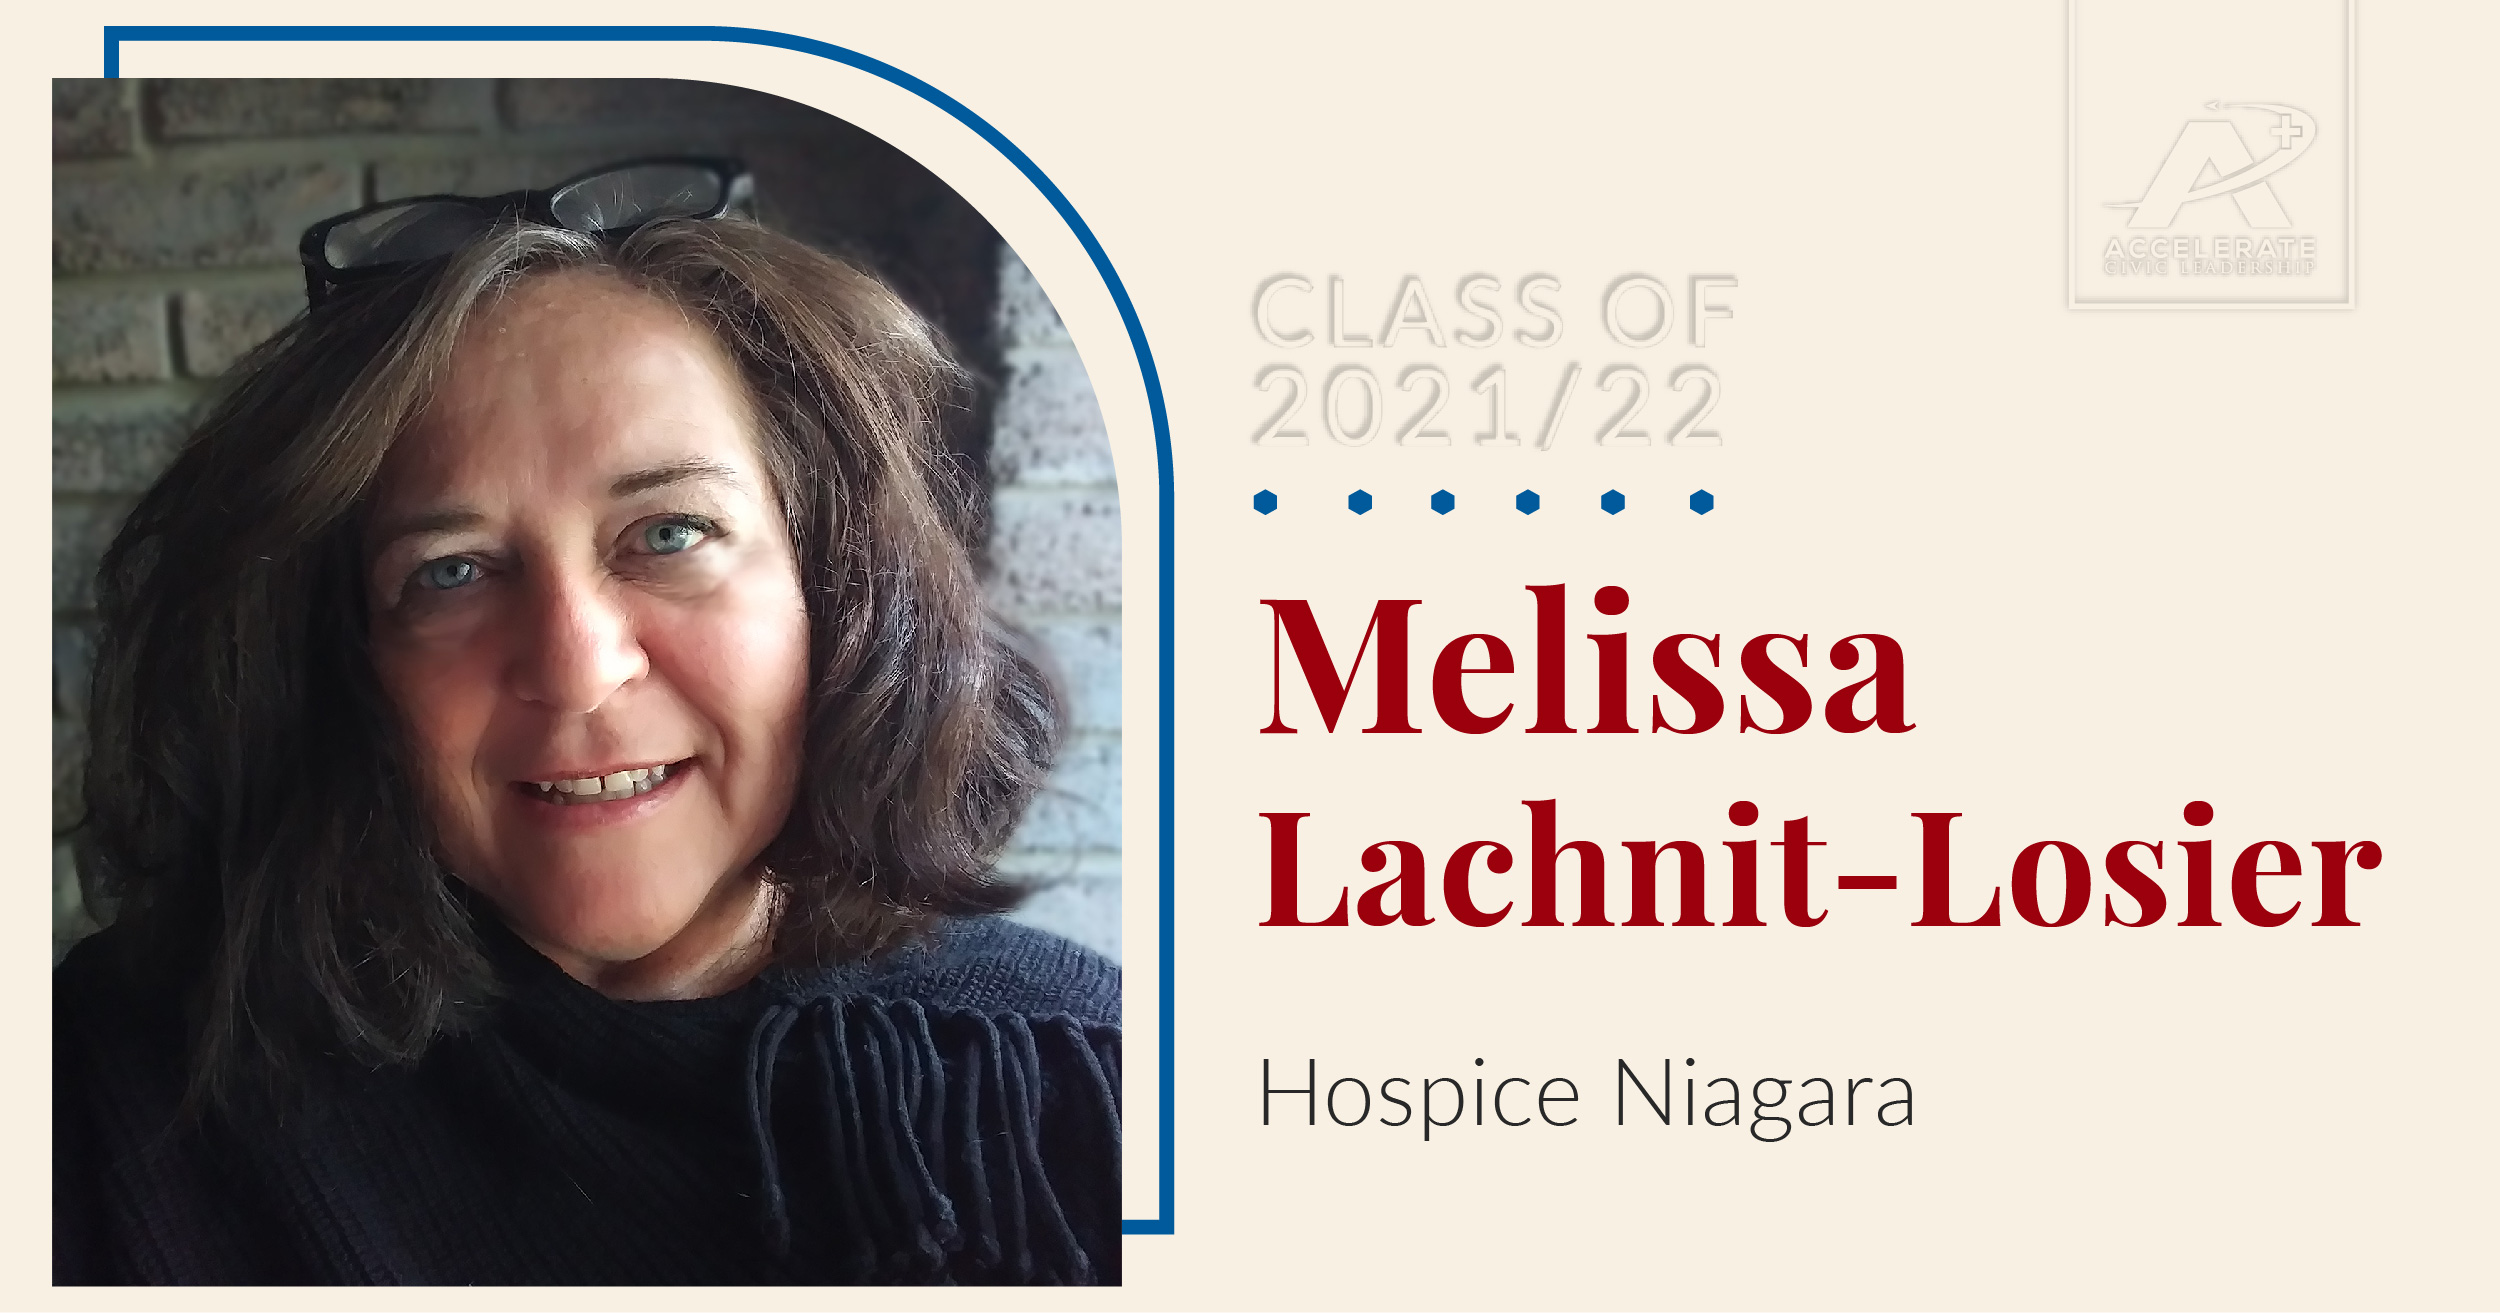 Leader spotlight for Melissa Lachnit Losier, Marketing Manager, Hospice Niagara